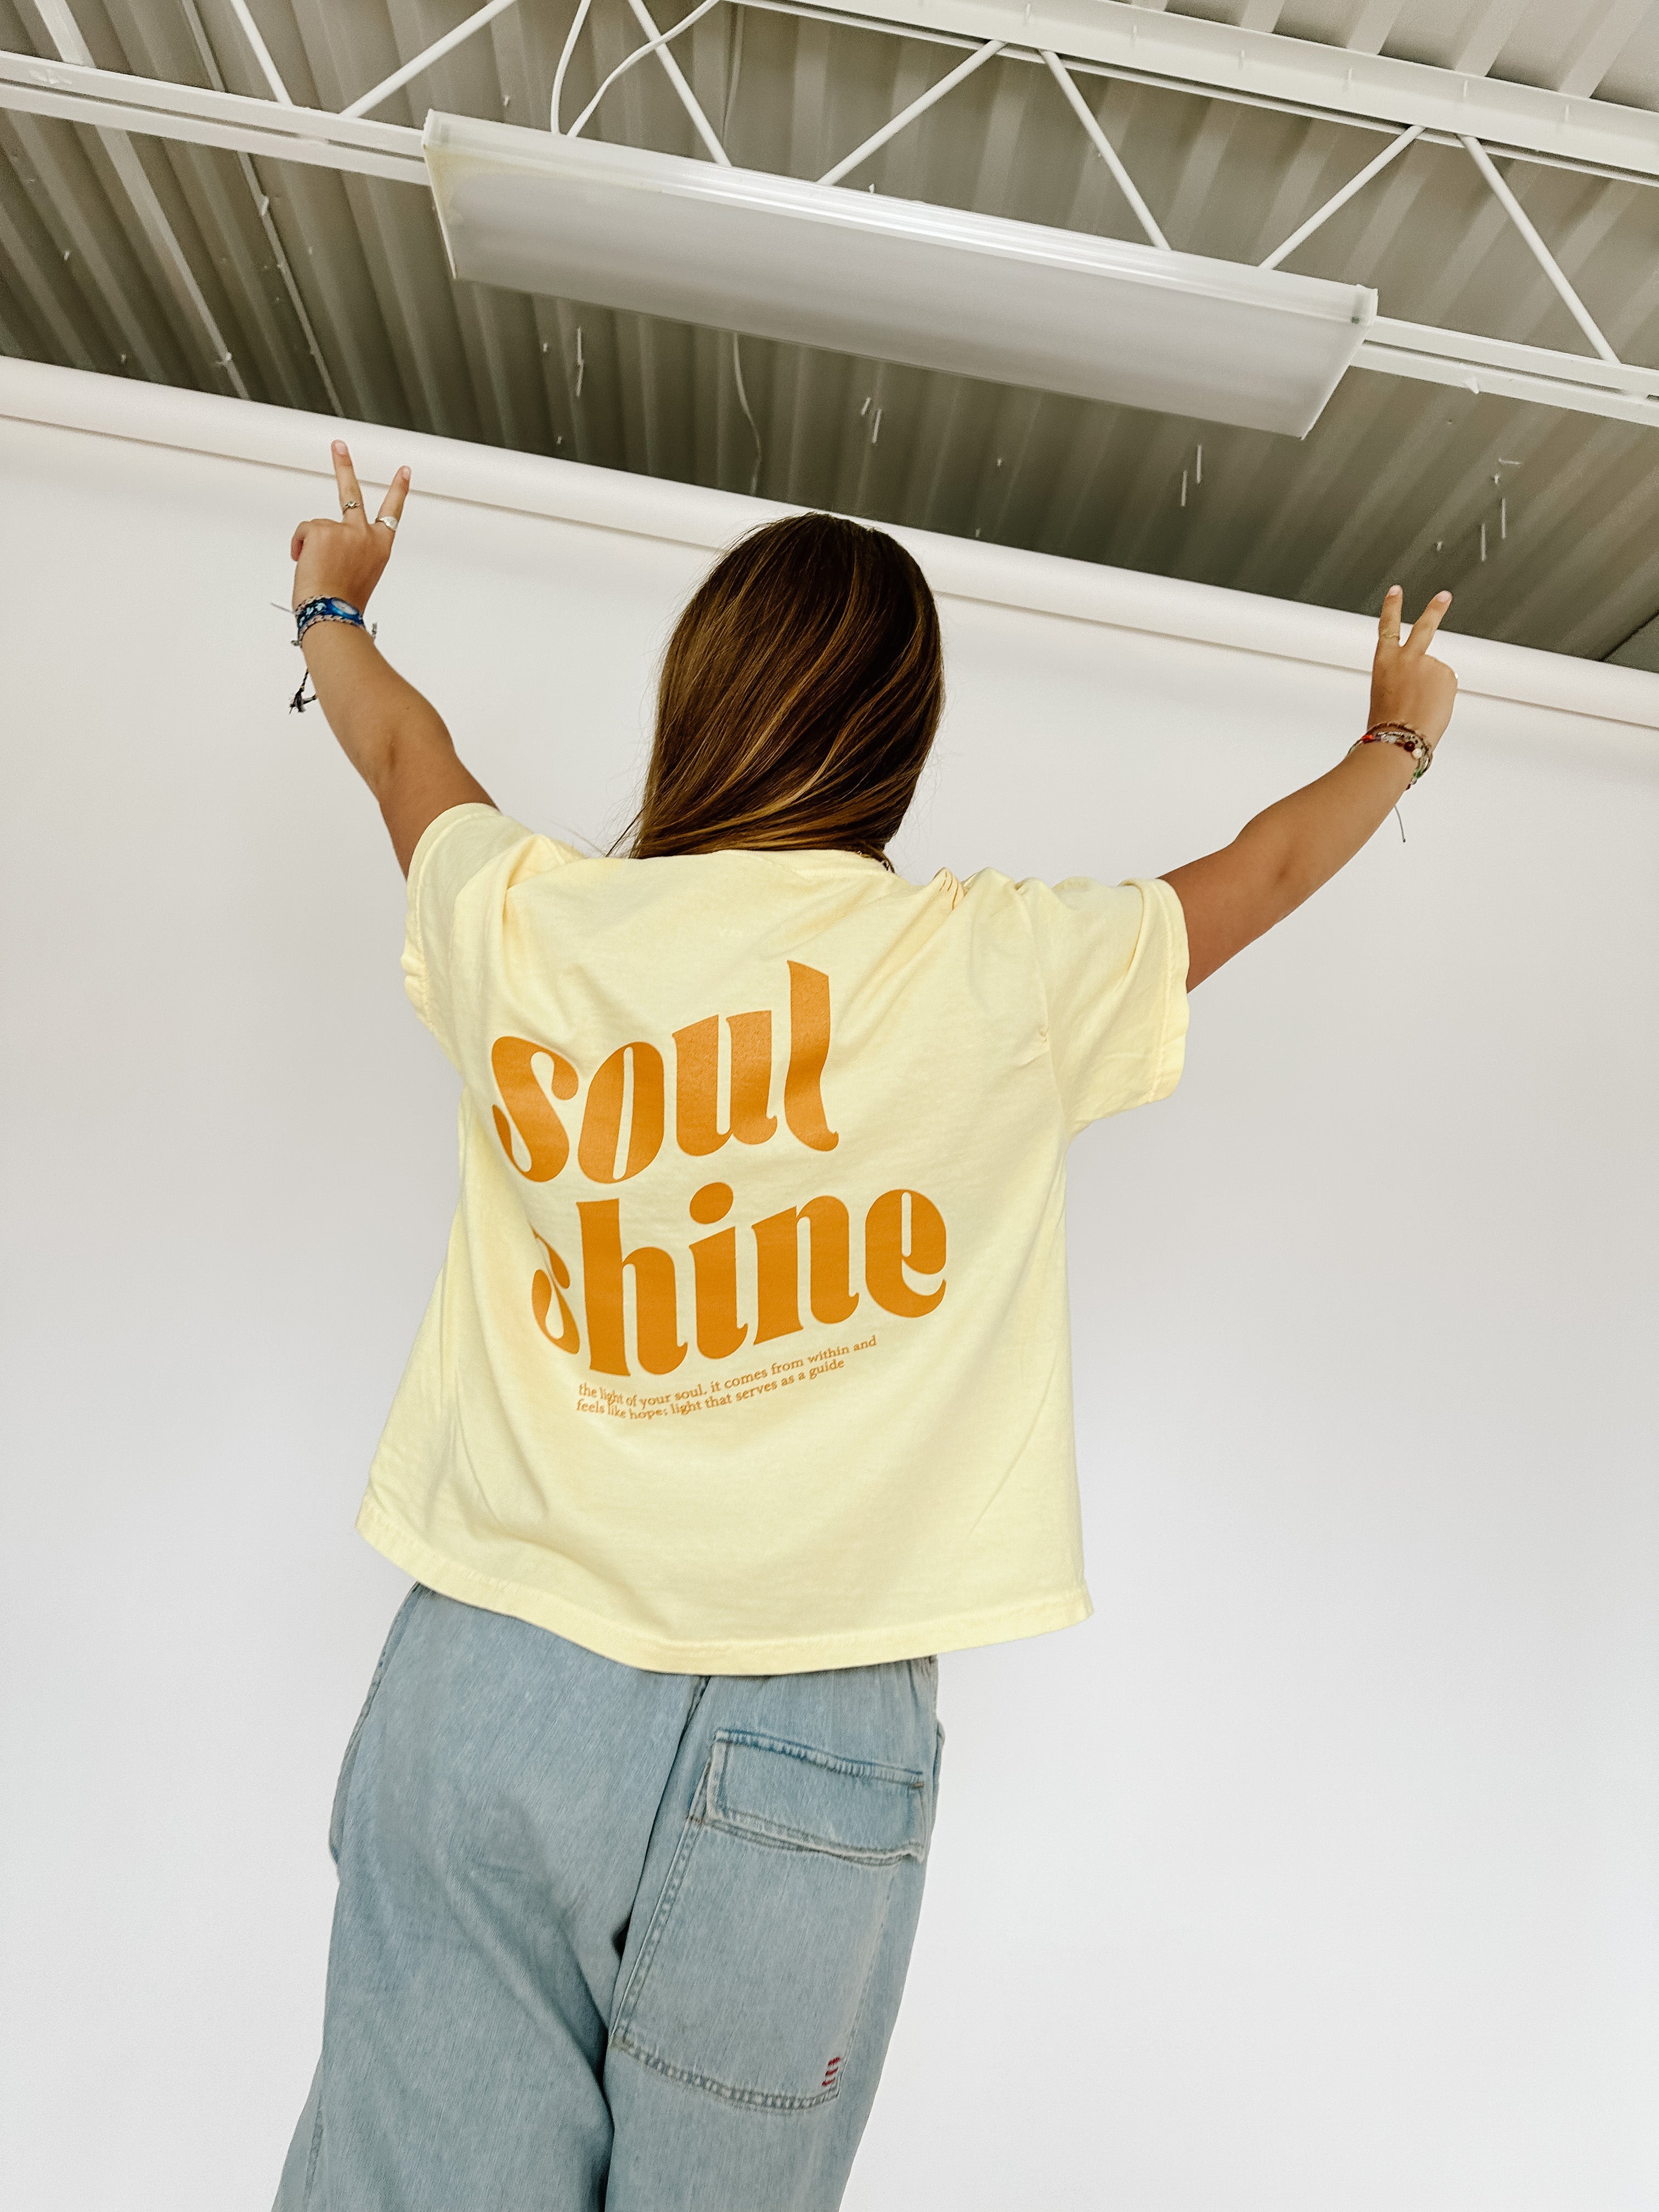 Soul shine ☀️